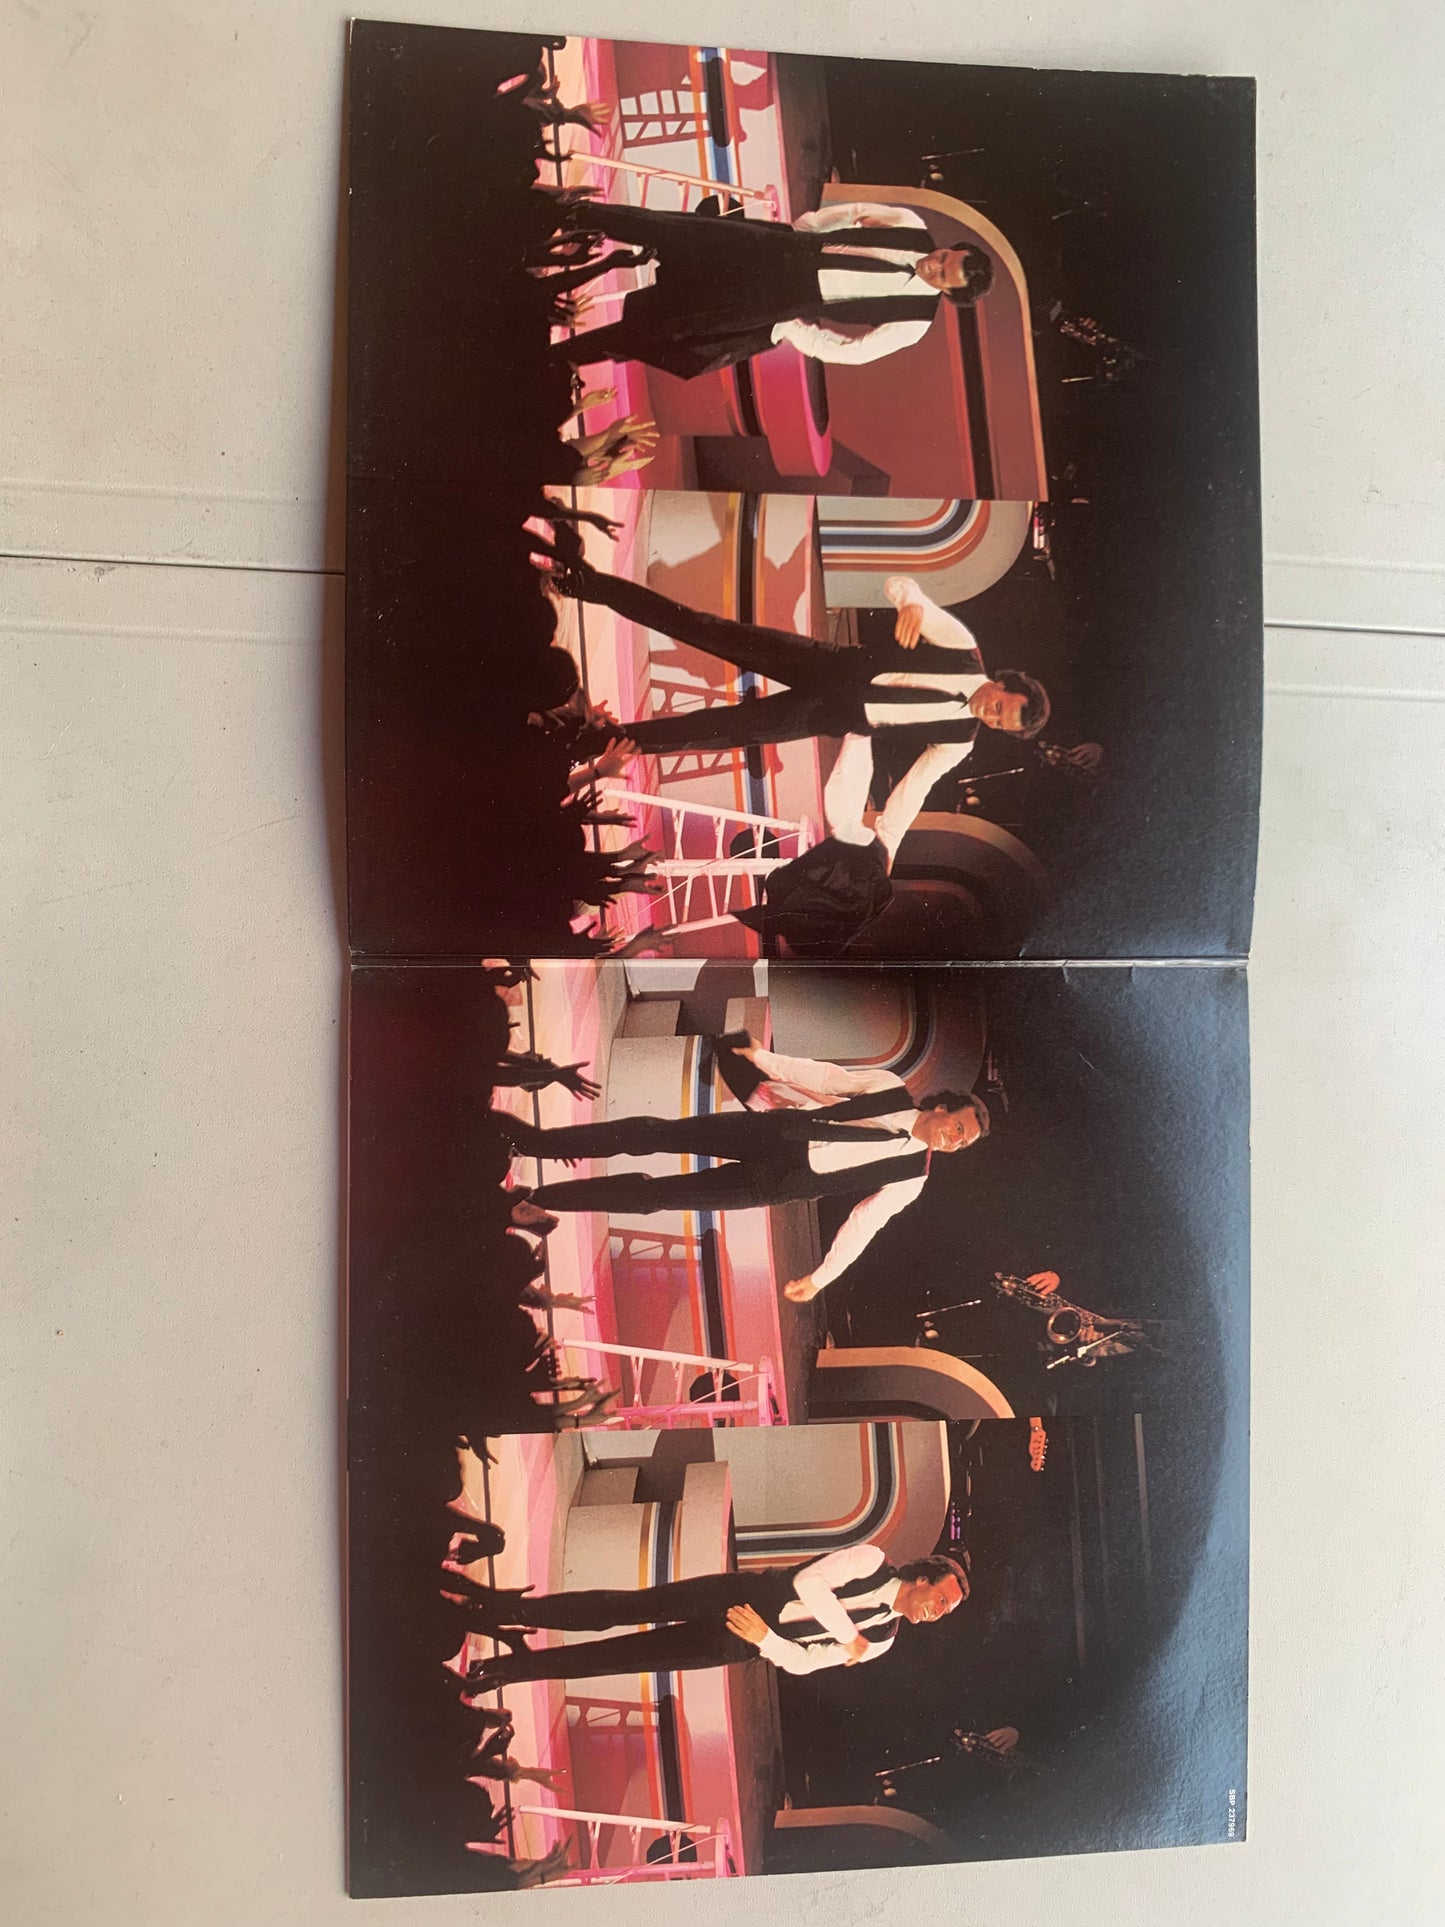 Vinyl Record LP Julio Iglesias in Concert Original 1983